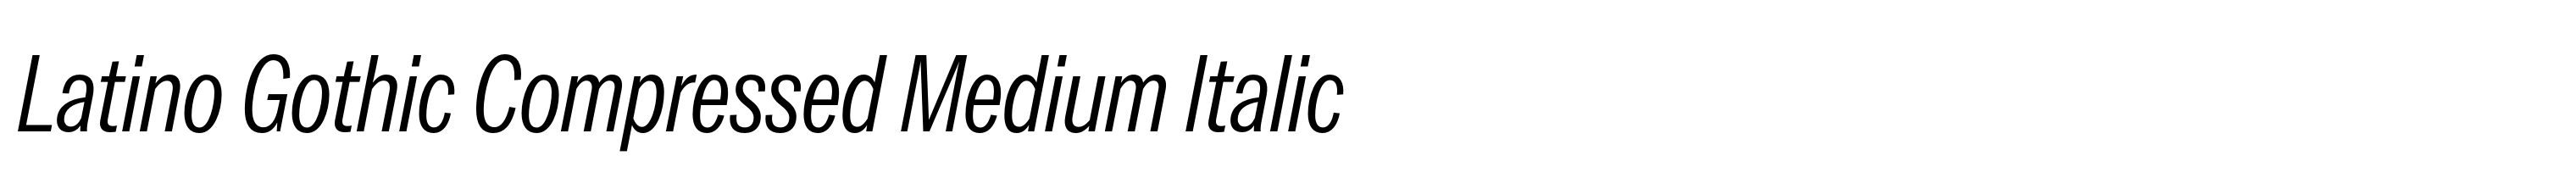 Latino Gothic Compressed Medium Italic